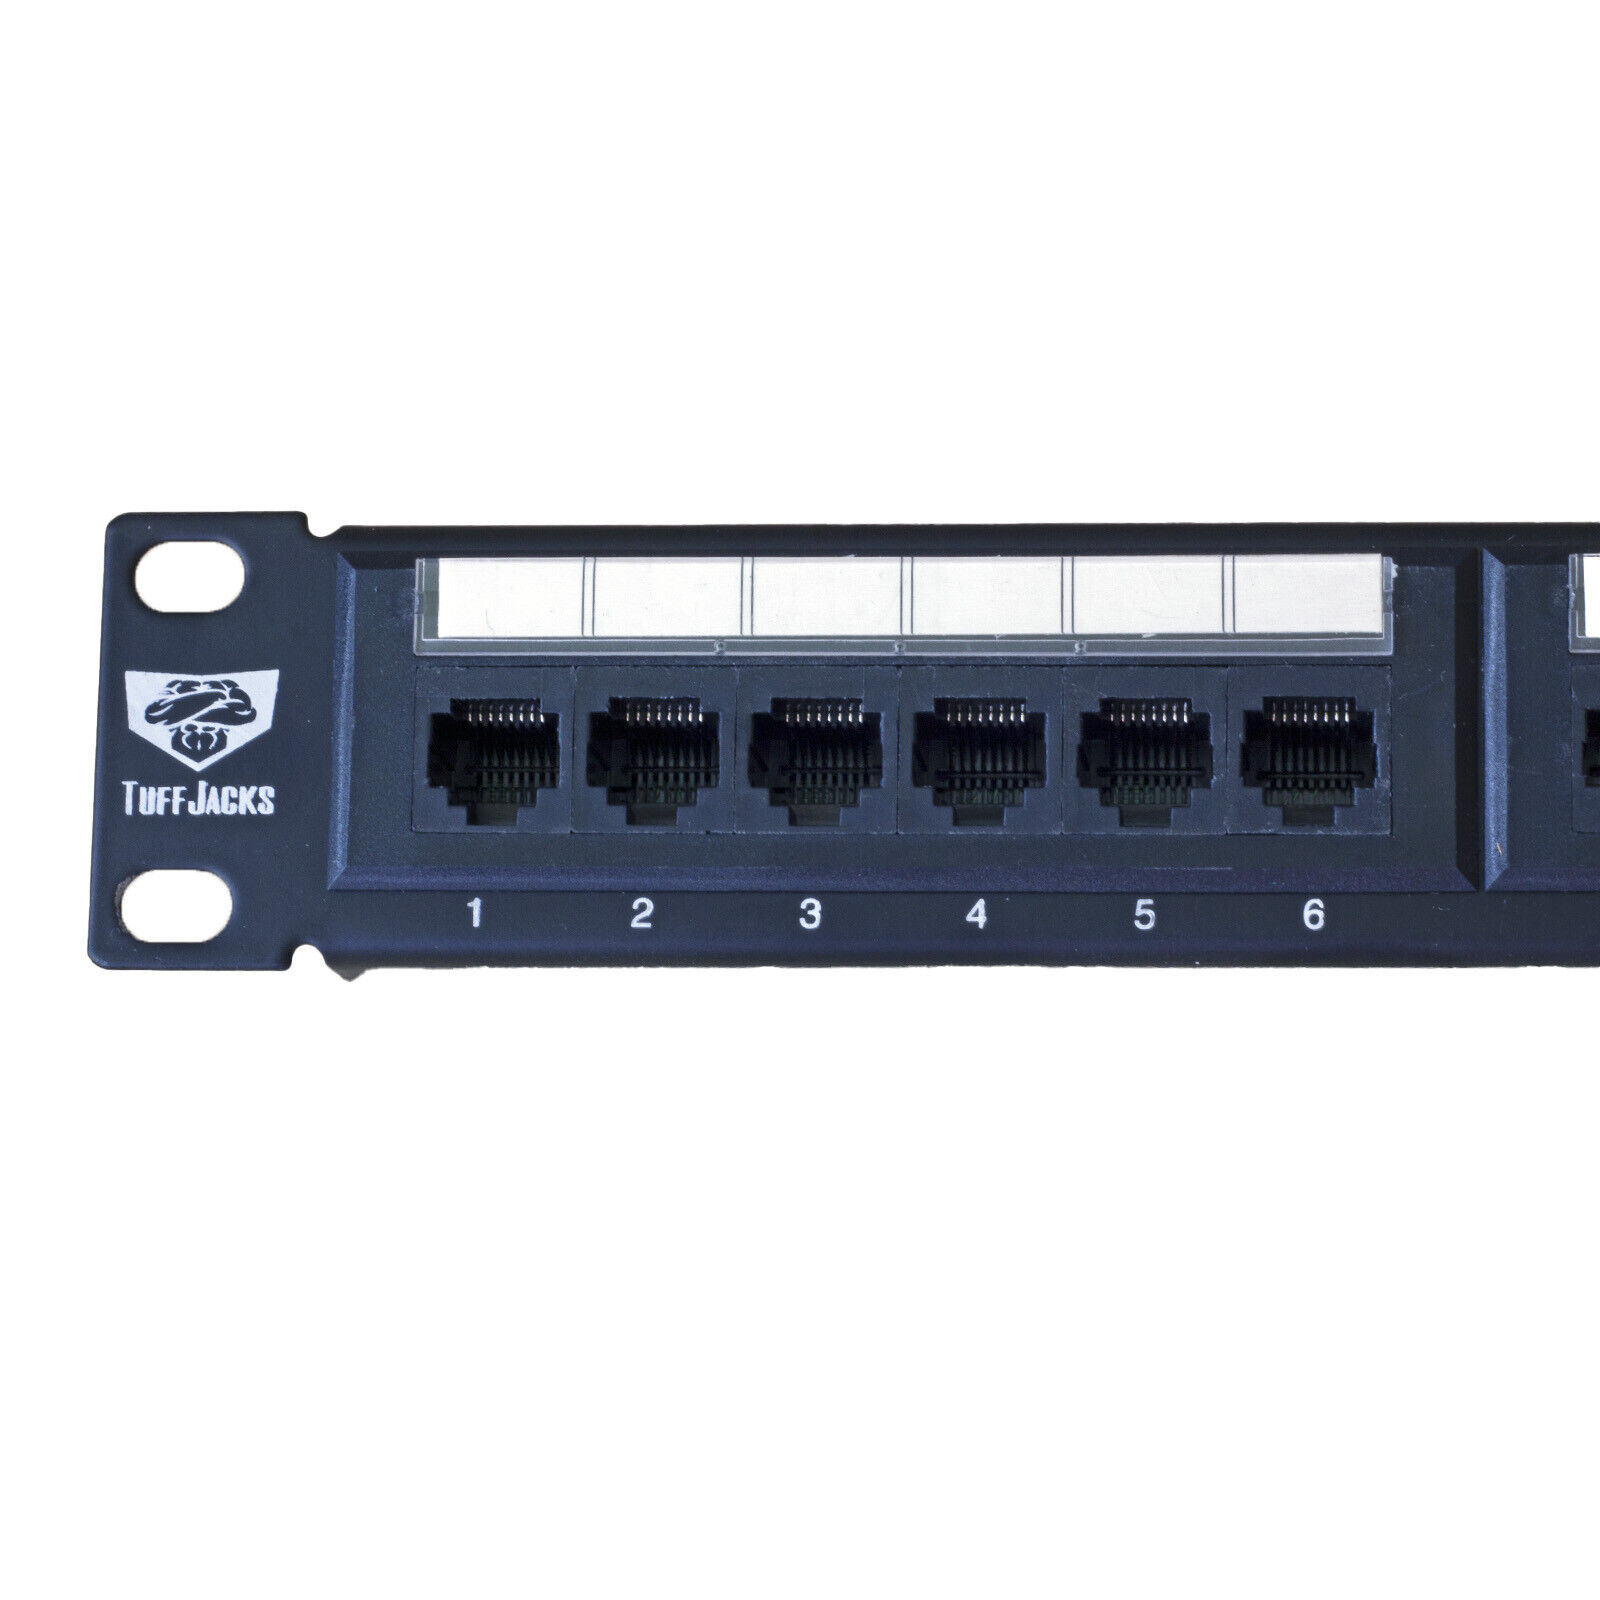 ValueLine Cat5e 24 Port Ethernet Patch Panel w/Wire management Bar RJ45 an RJ11